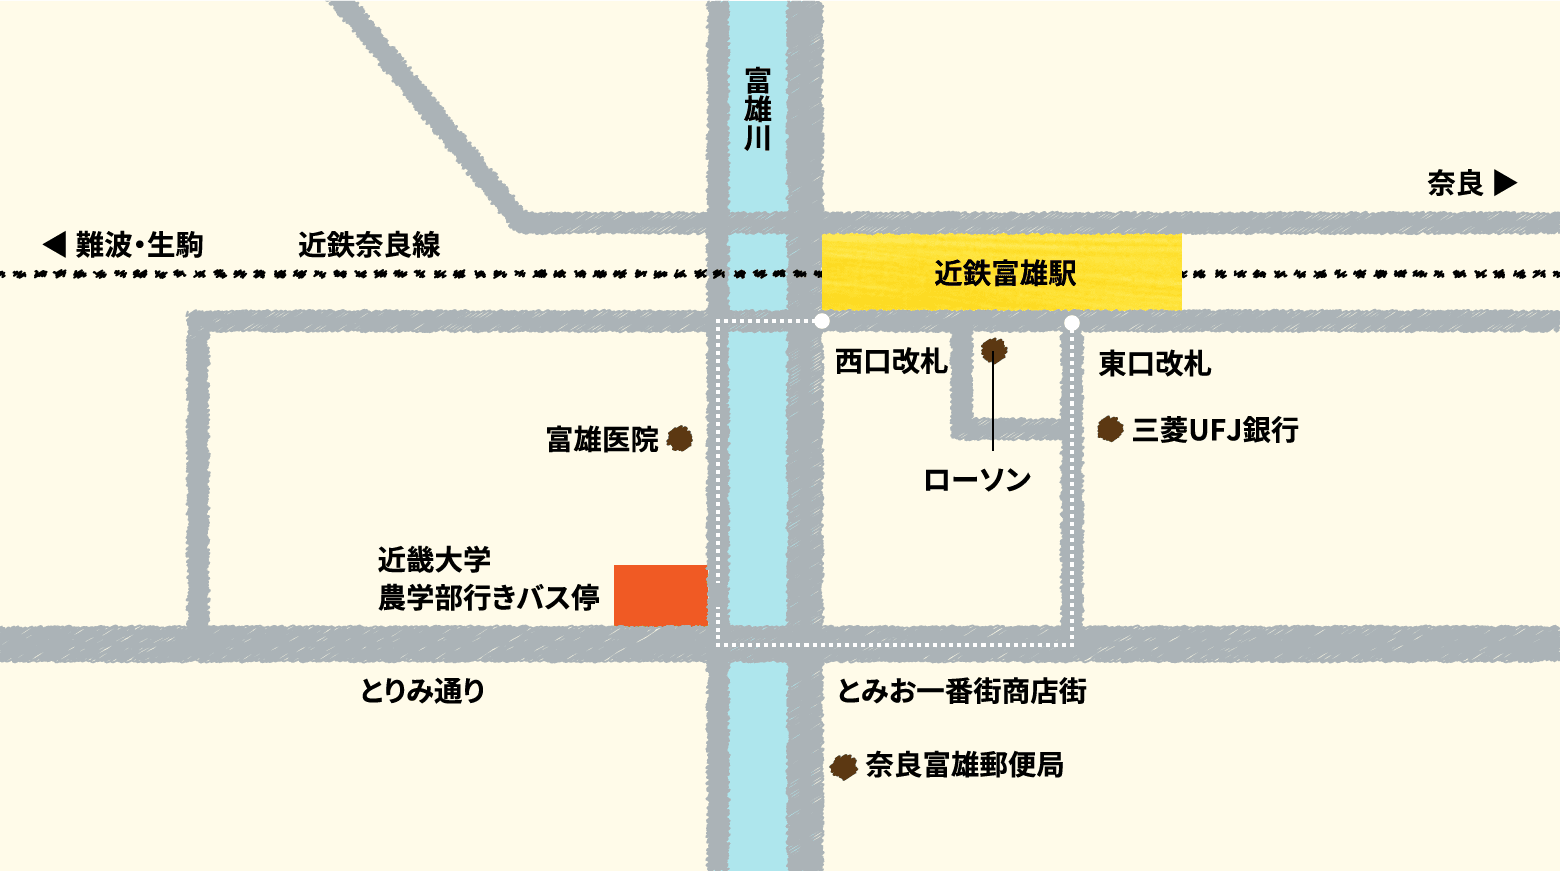 近鉄富雄駅に着き、東口改札から出た場合はまっすぐ進み三菱UFJ銀行の前をすぎ突き当たりを右に進みます。その後富雄川を渡ると近畿大学農学部行きバス停があります。西口から出た場合は、右に進み、富雄川を渡ってすぐ左に曲がり進んでいくと近畿大学農学部行きバス停があります。